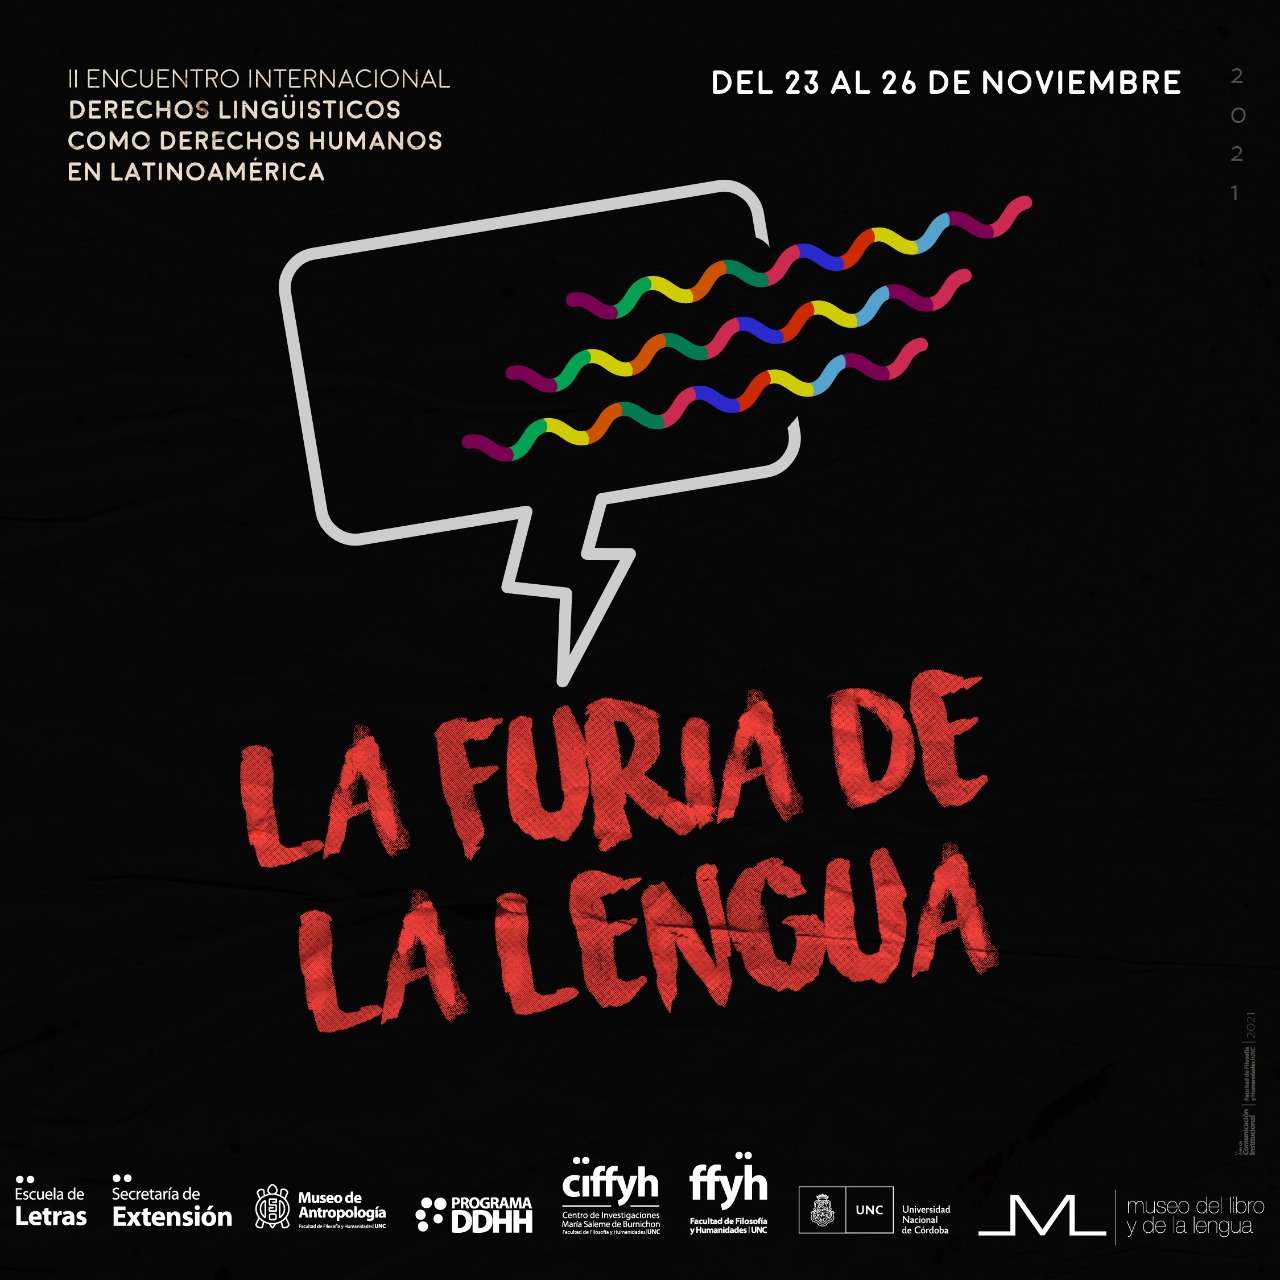 II Encuentro Internacional: derechos lingüísticos como derechos humanos en Latinoamérica / LA FURIA DE LA LENGUA